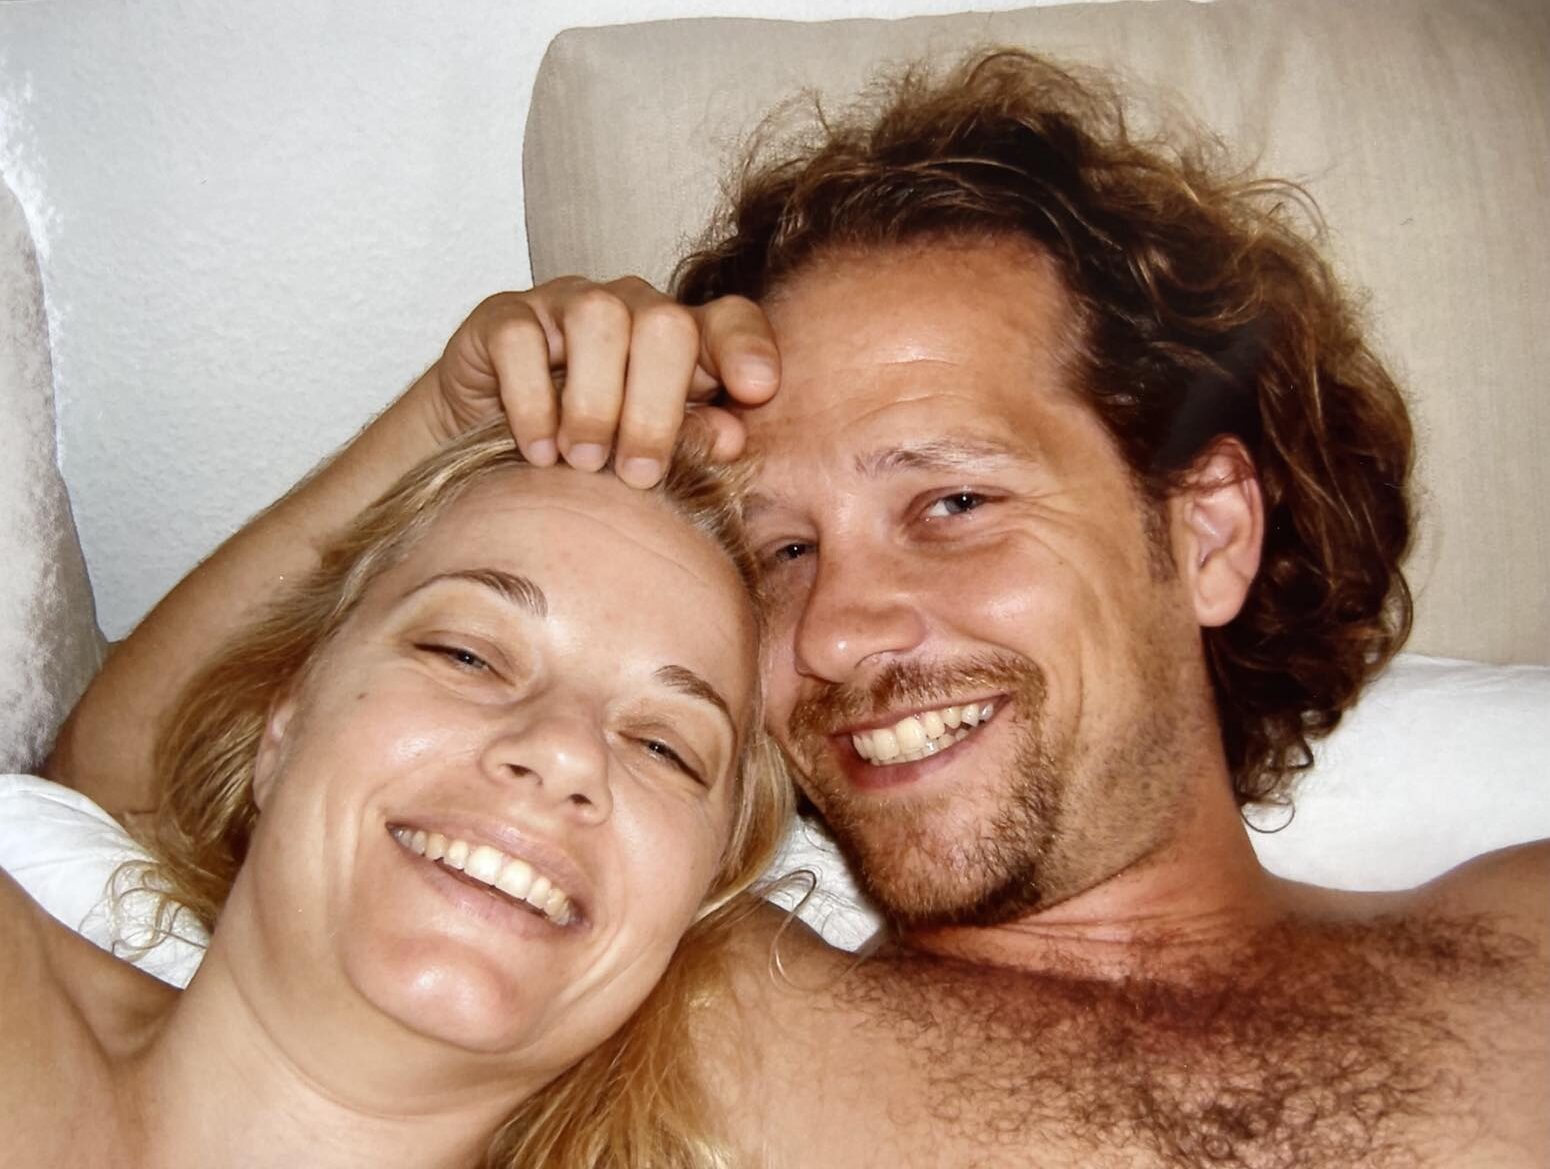 Morten og Pernille i en seng i begyndelsen af deres forhold